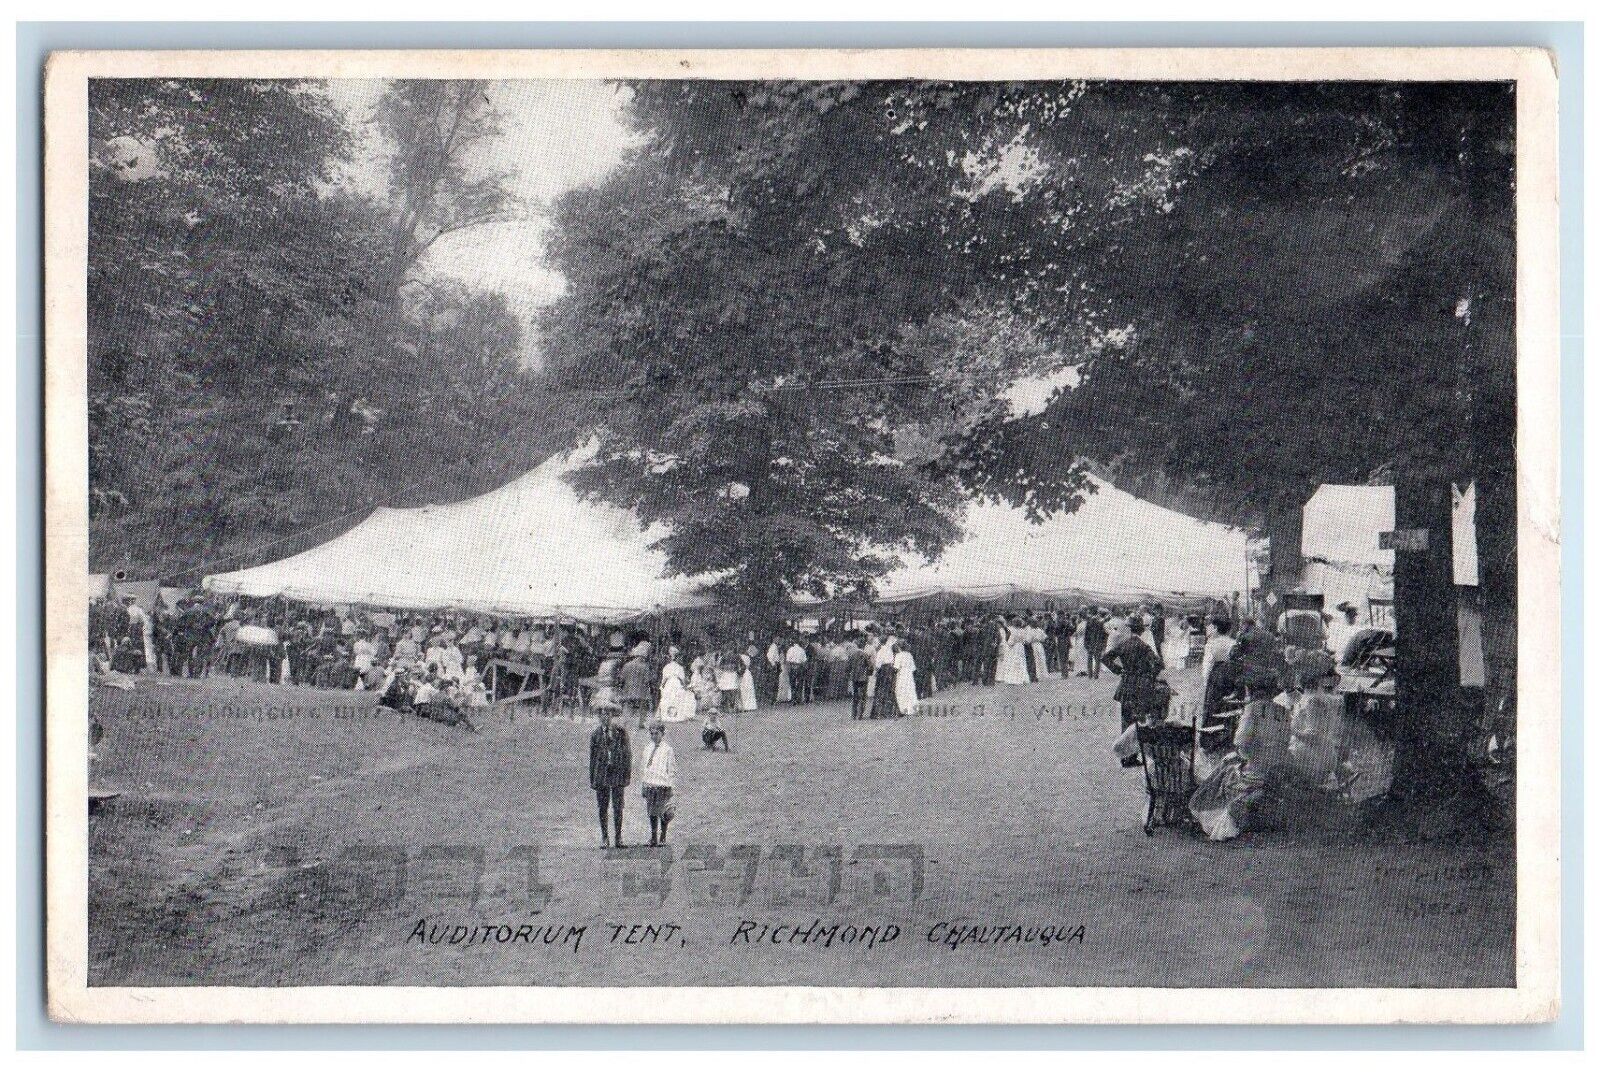 1911 Auditorium Tent Richmond Chautauqua Indiana IN Posted Antique Postcard